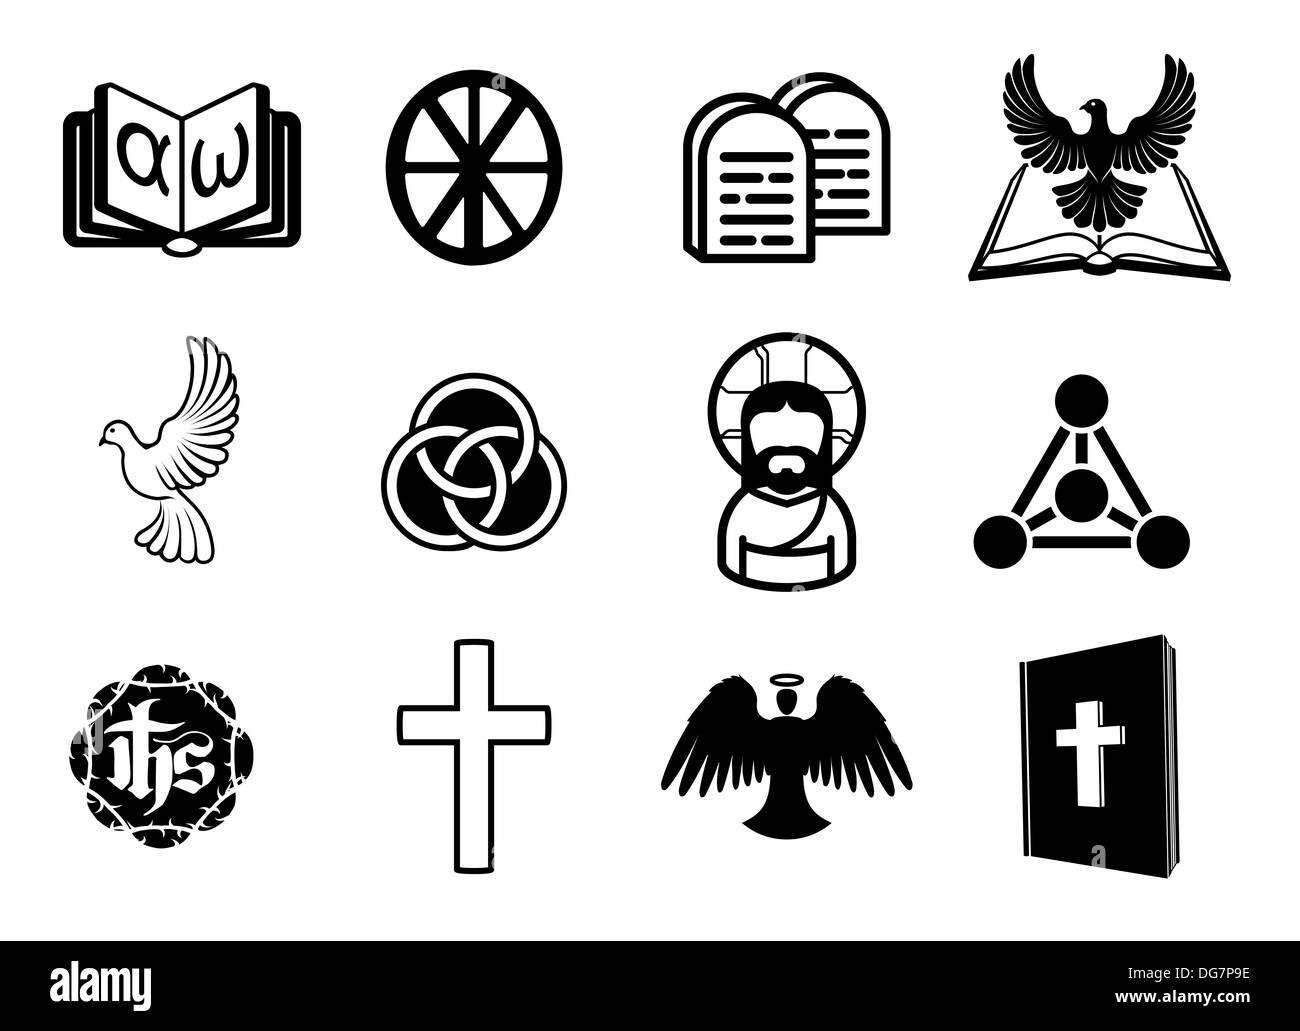 Un ensemble d'icônes religieuses chrétiennes avec des signes et symboles relatifs à des thèmes chrétiens Banque D'Images